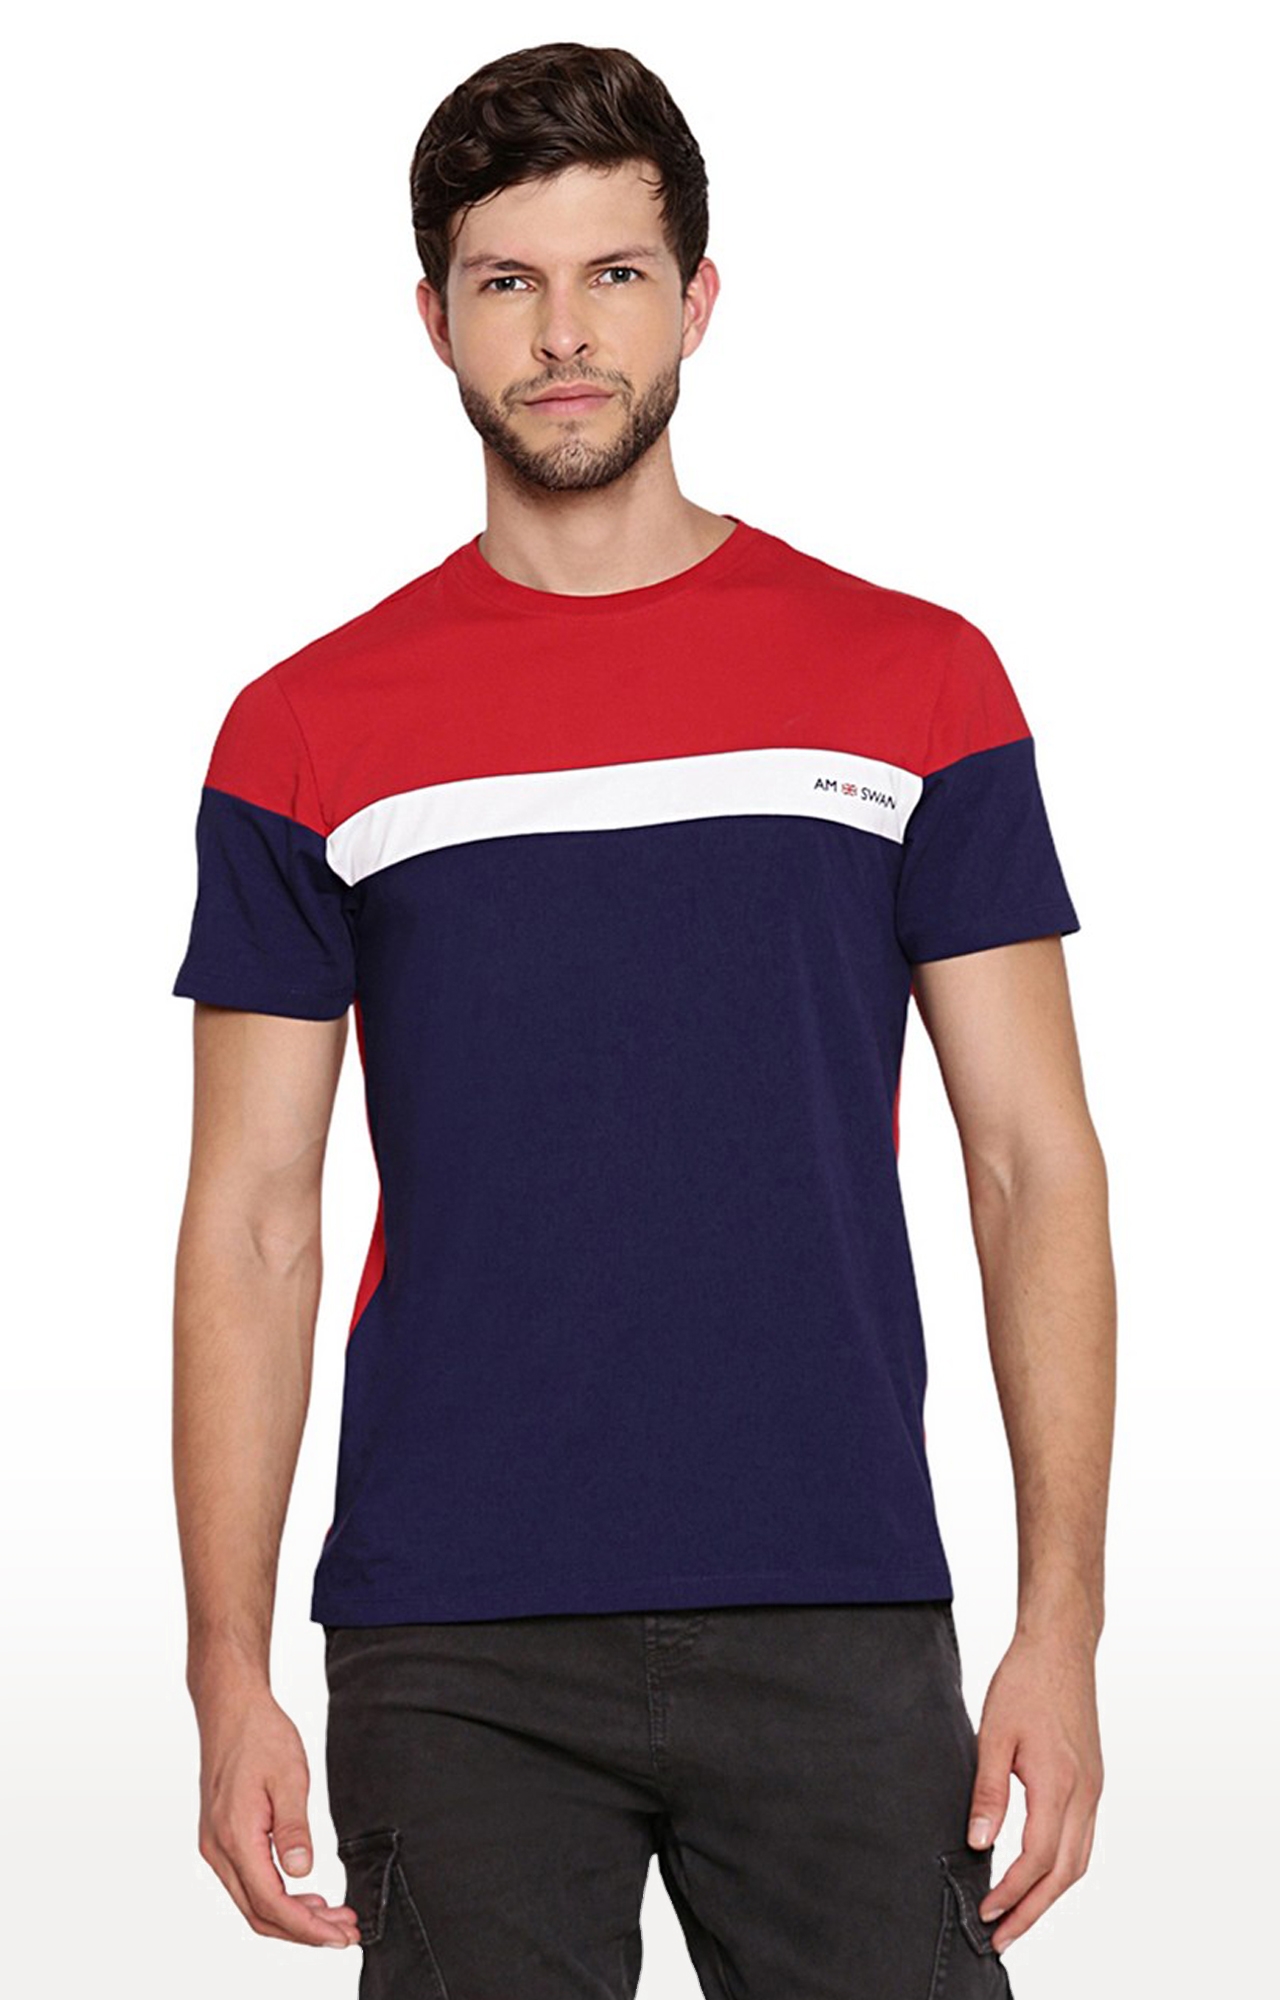 Am Swan | Men's Blue and Red Cotton Blend Colourblock Regular T-Shirt